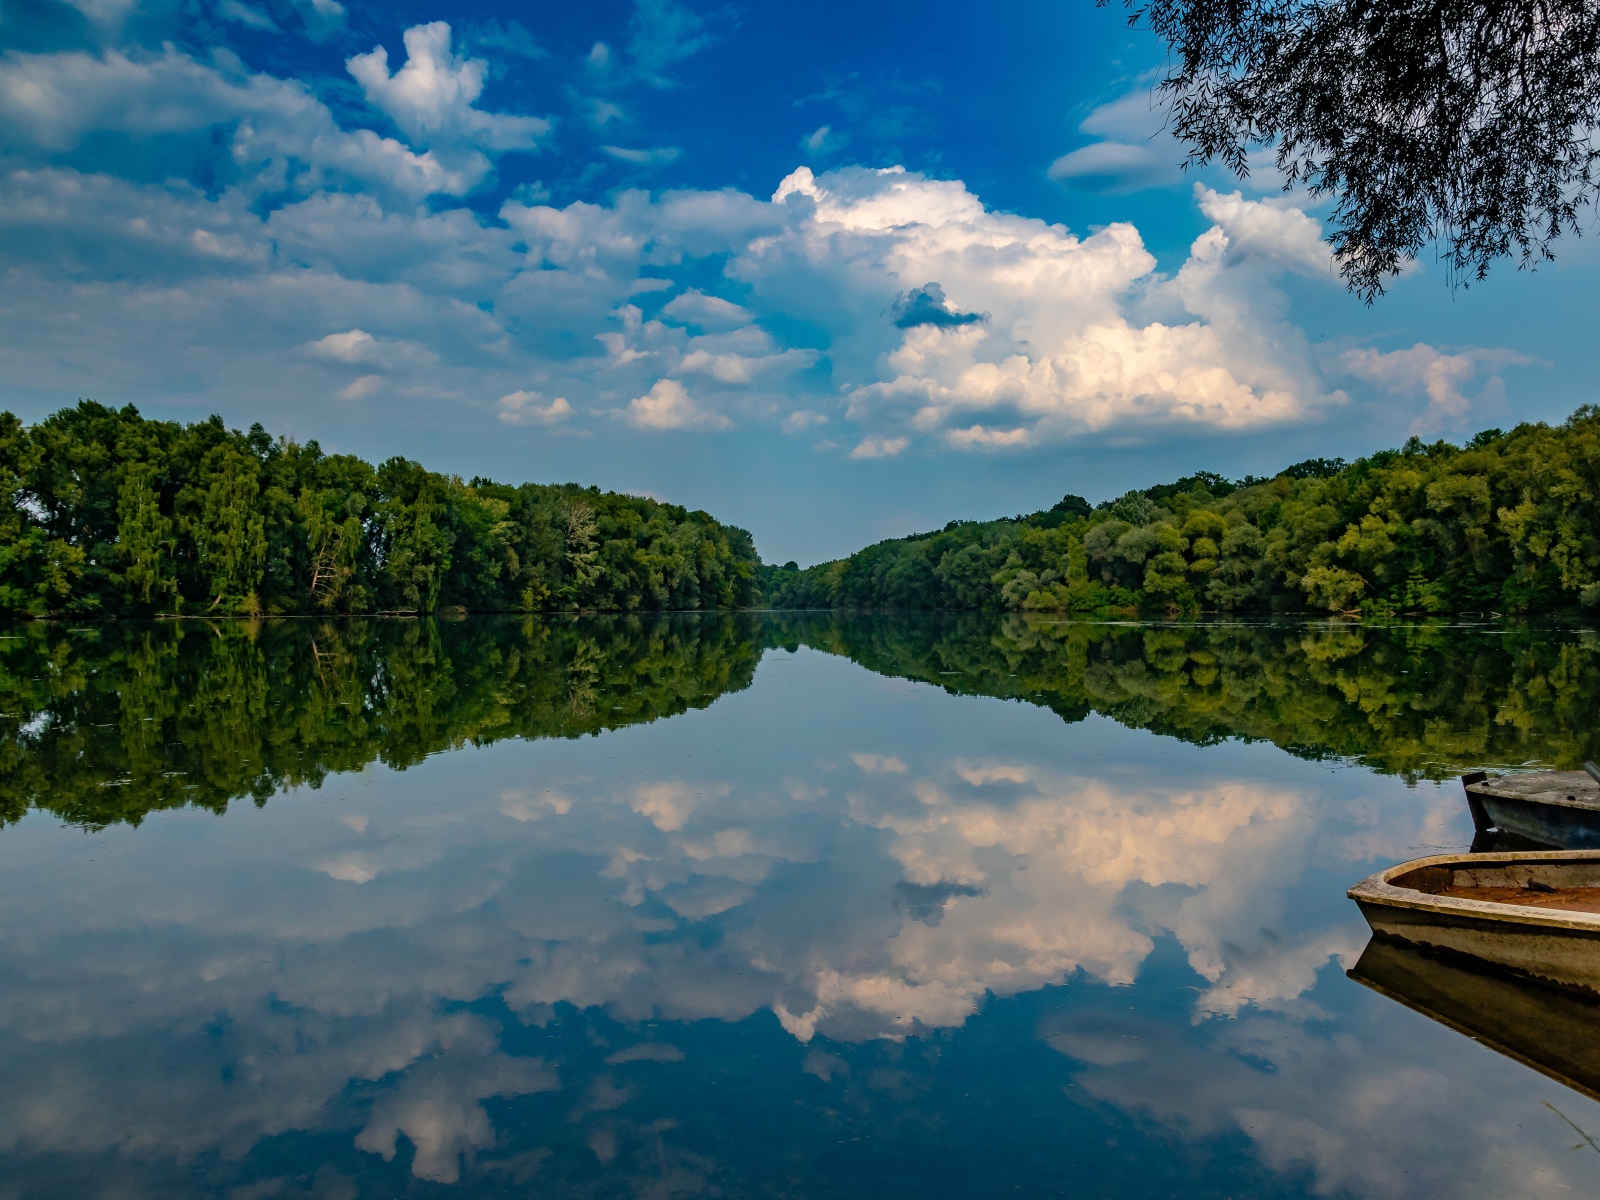 Красивое голубое небо и зеленый лес отражаются в зеркальной глади озера